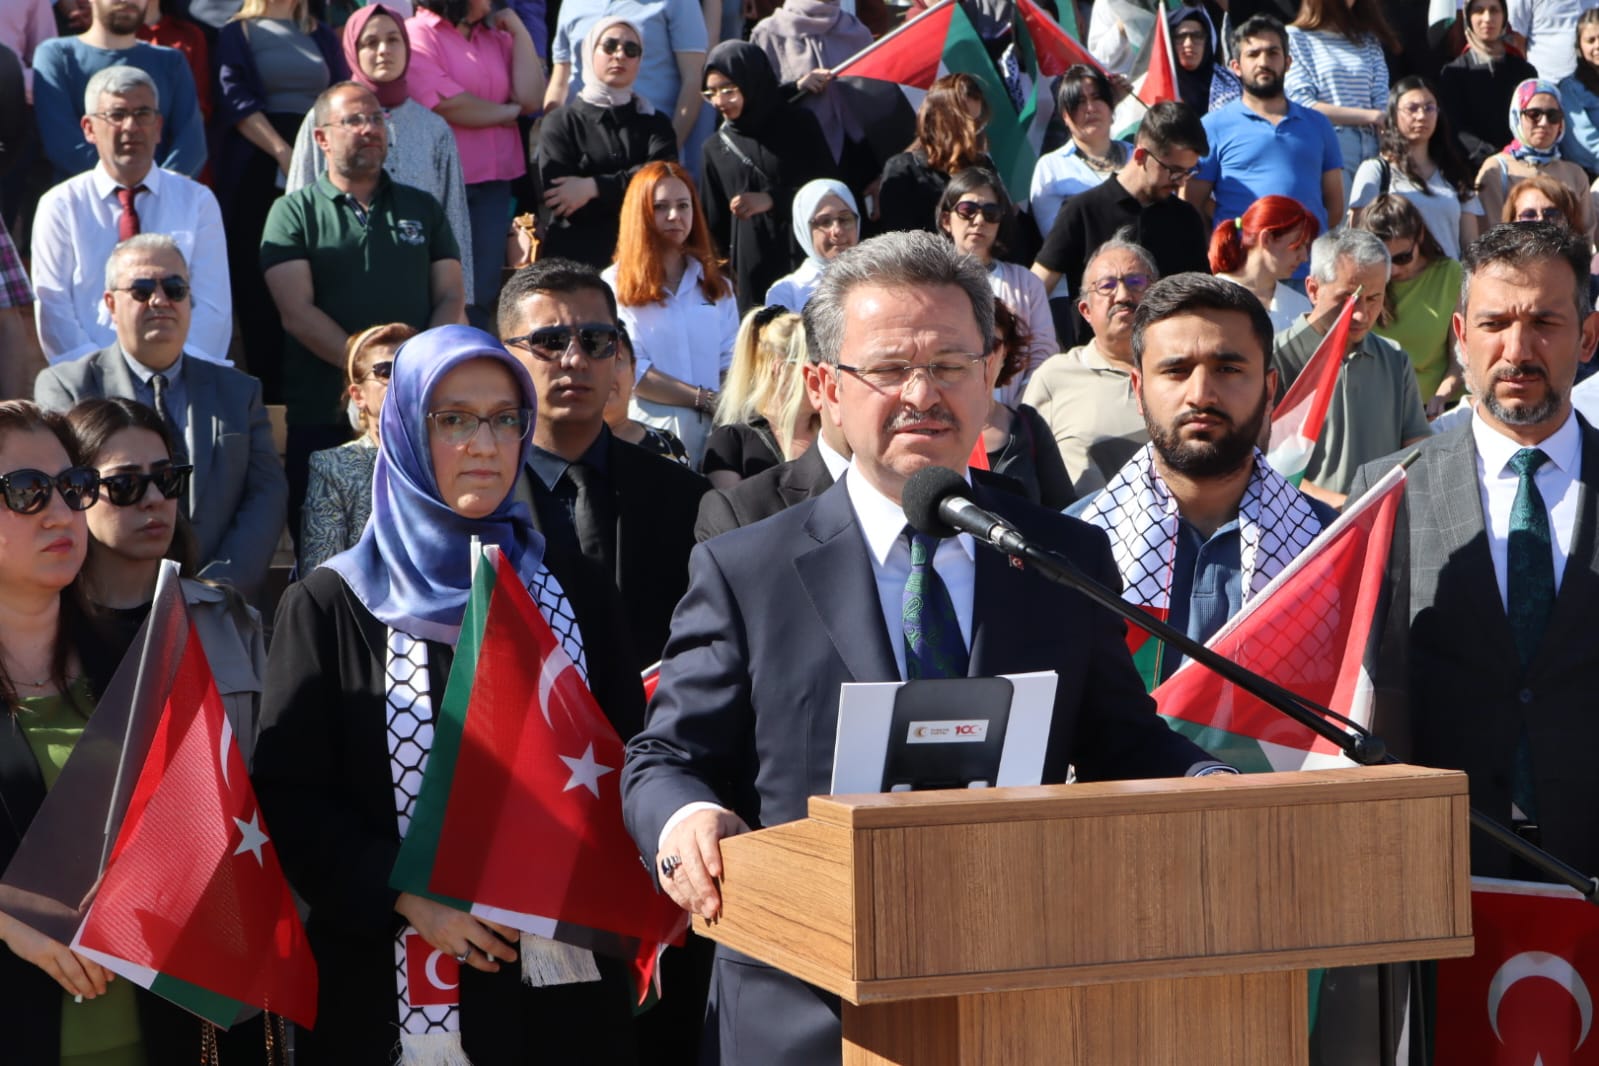 Manisa Celal Bayar Üniversitesi (Cbü), Abd Üniversitelerinde Ifade Özgürlüğüne Yönelik Baskıya Karşı Duruşu Ve Filistin Halkının Yanında Olduğunu Açıkladı (3)